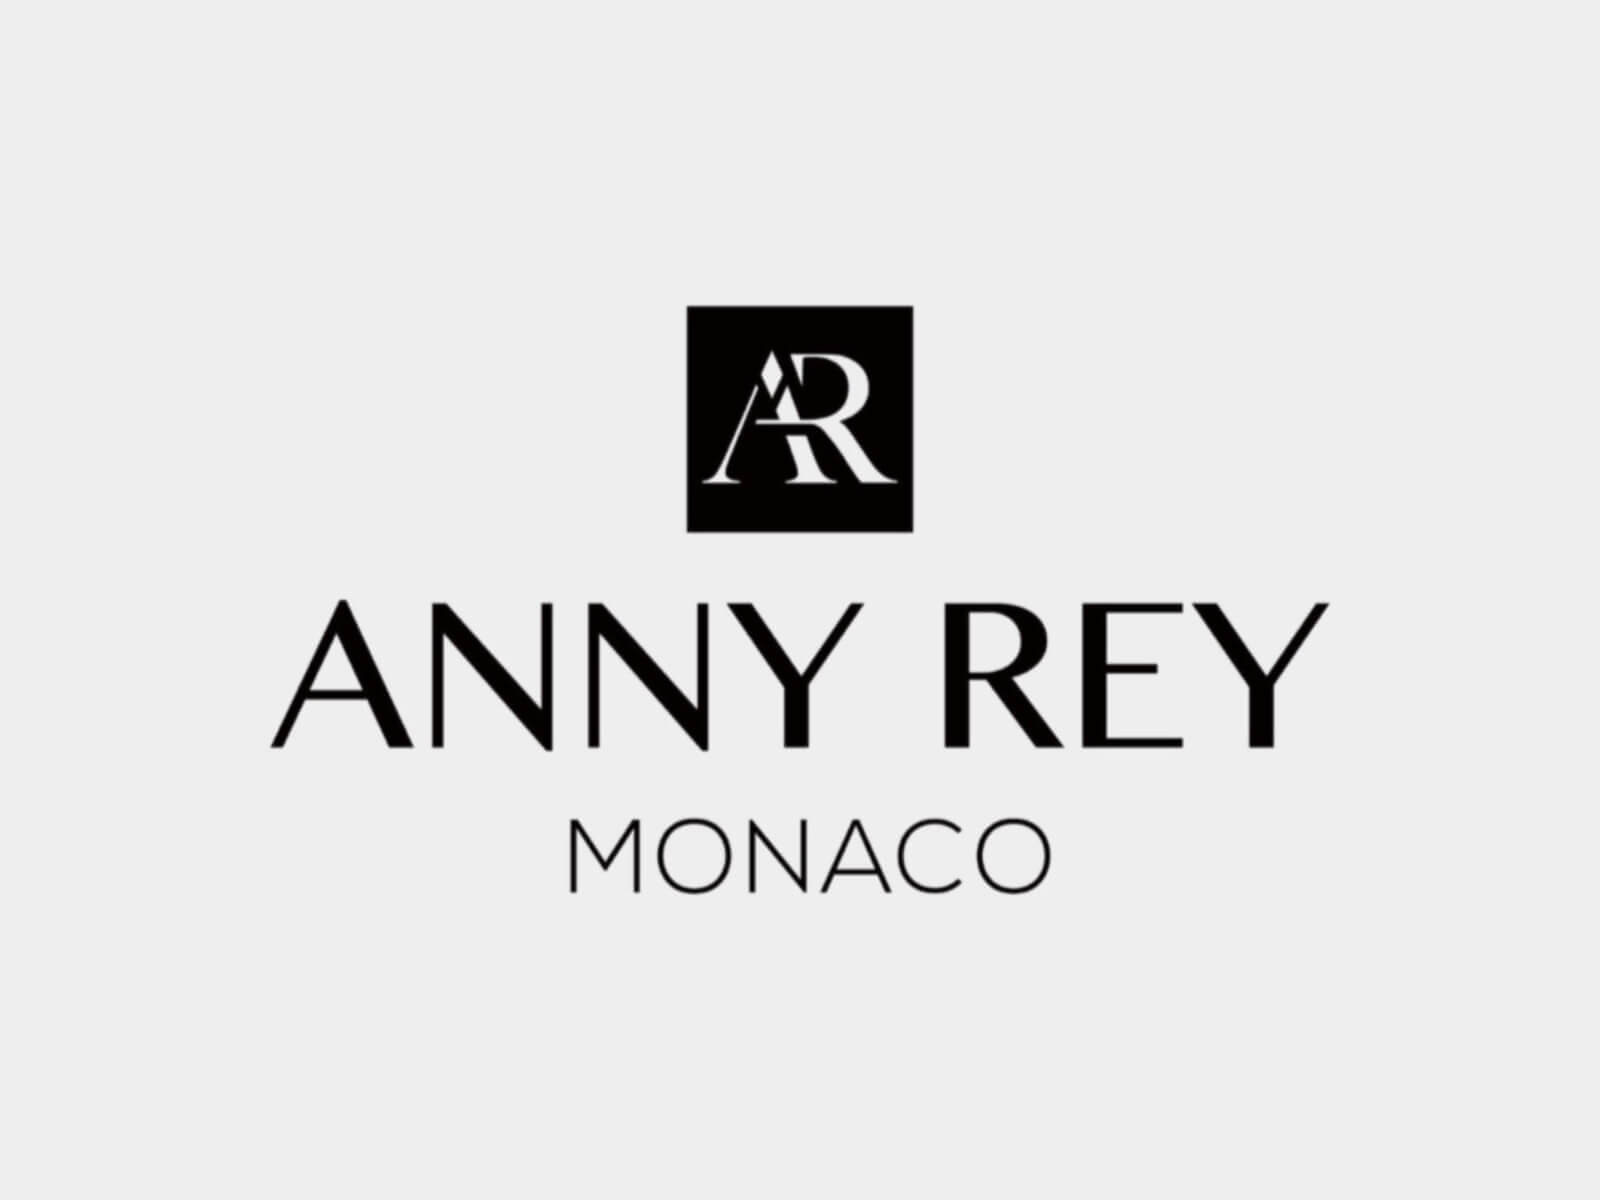 Anny rey французская. Французская косметика Greenway Anny Rey. Anna Rey Monaco косметика. Anny Rey французская премиум-косметика Гринвей. Ани Рей Гринвей.